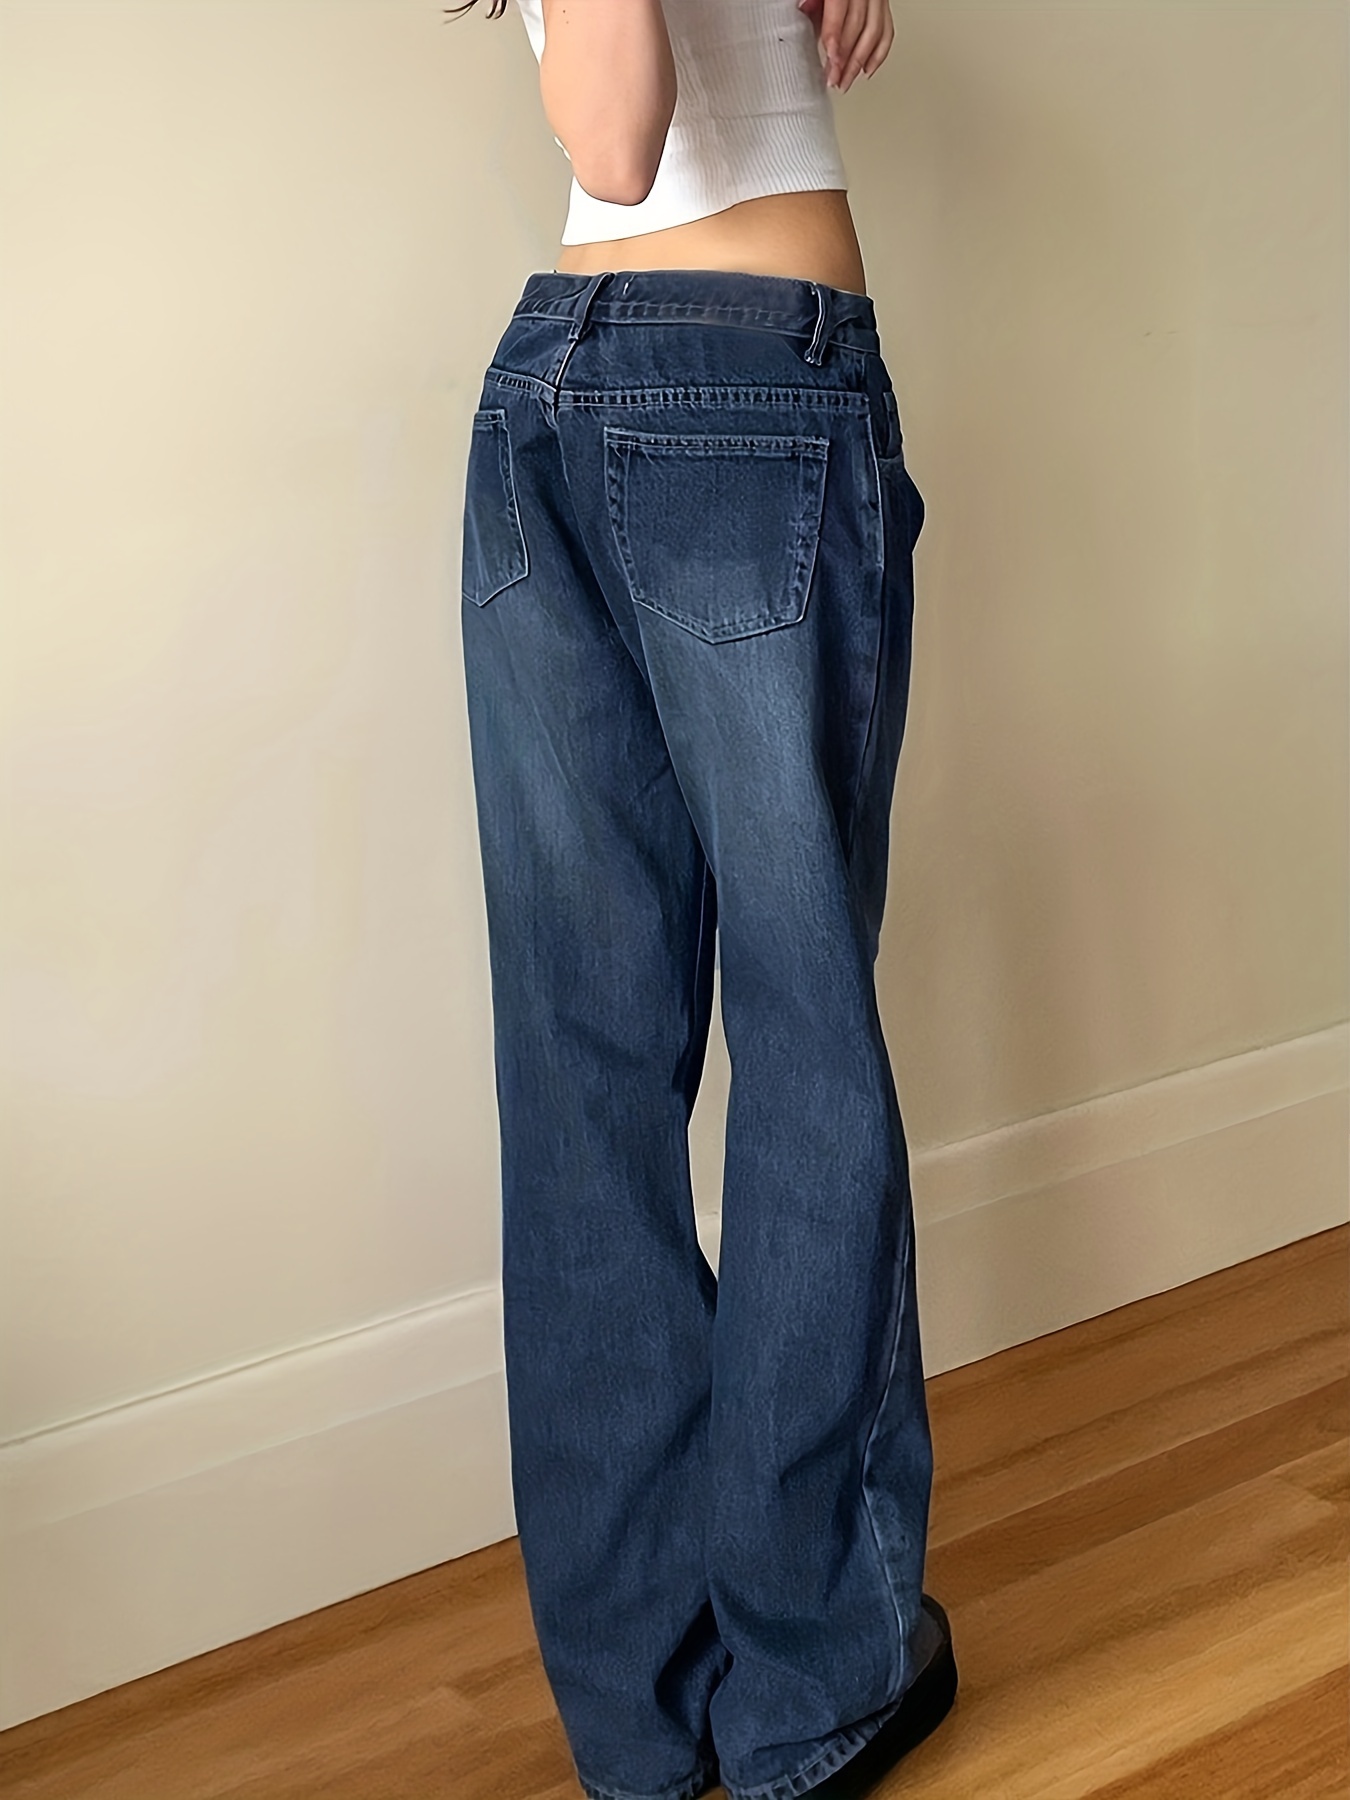 Women's Vintage Boyfriend Style Wide Leg Y2K Jeans High Waist